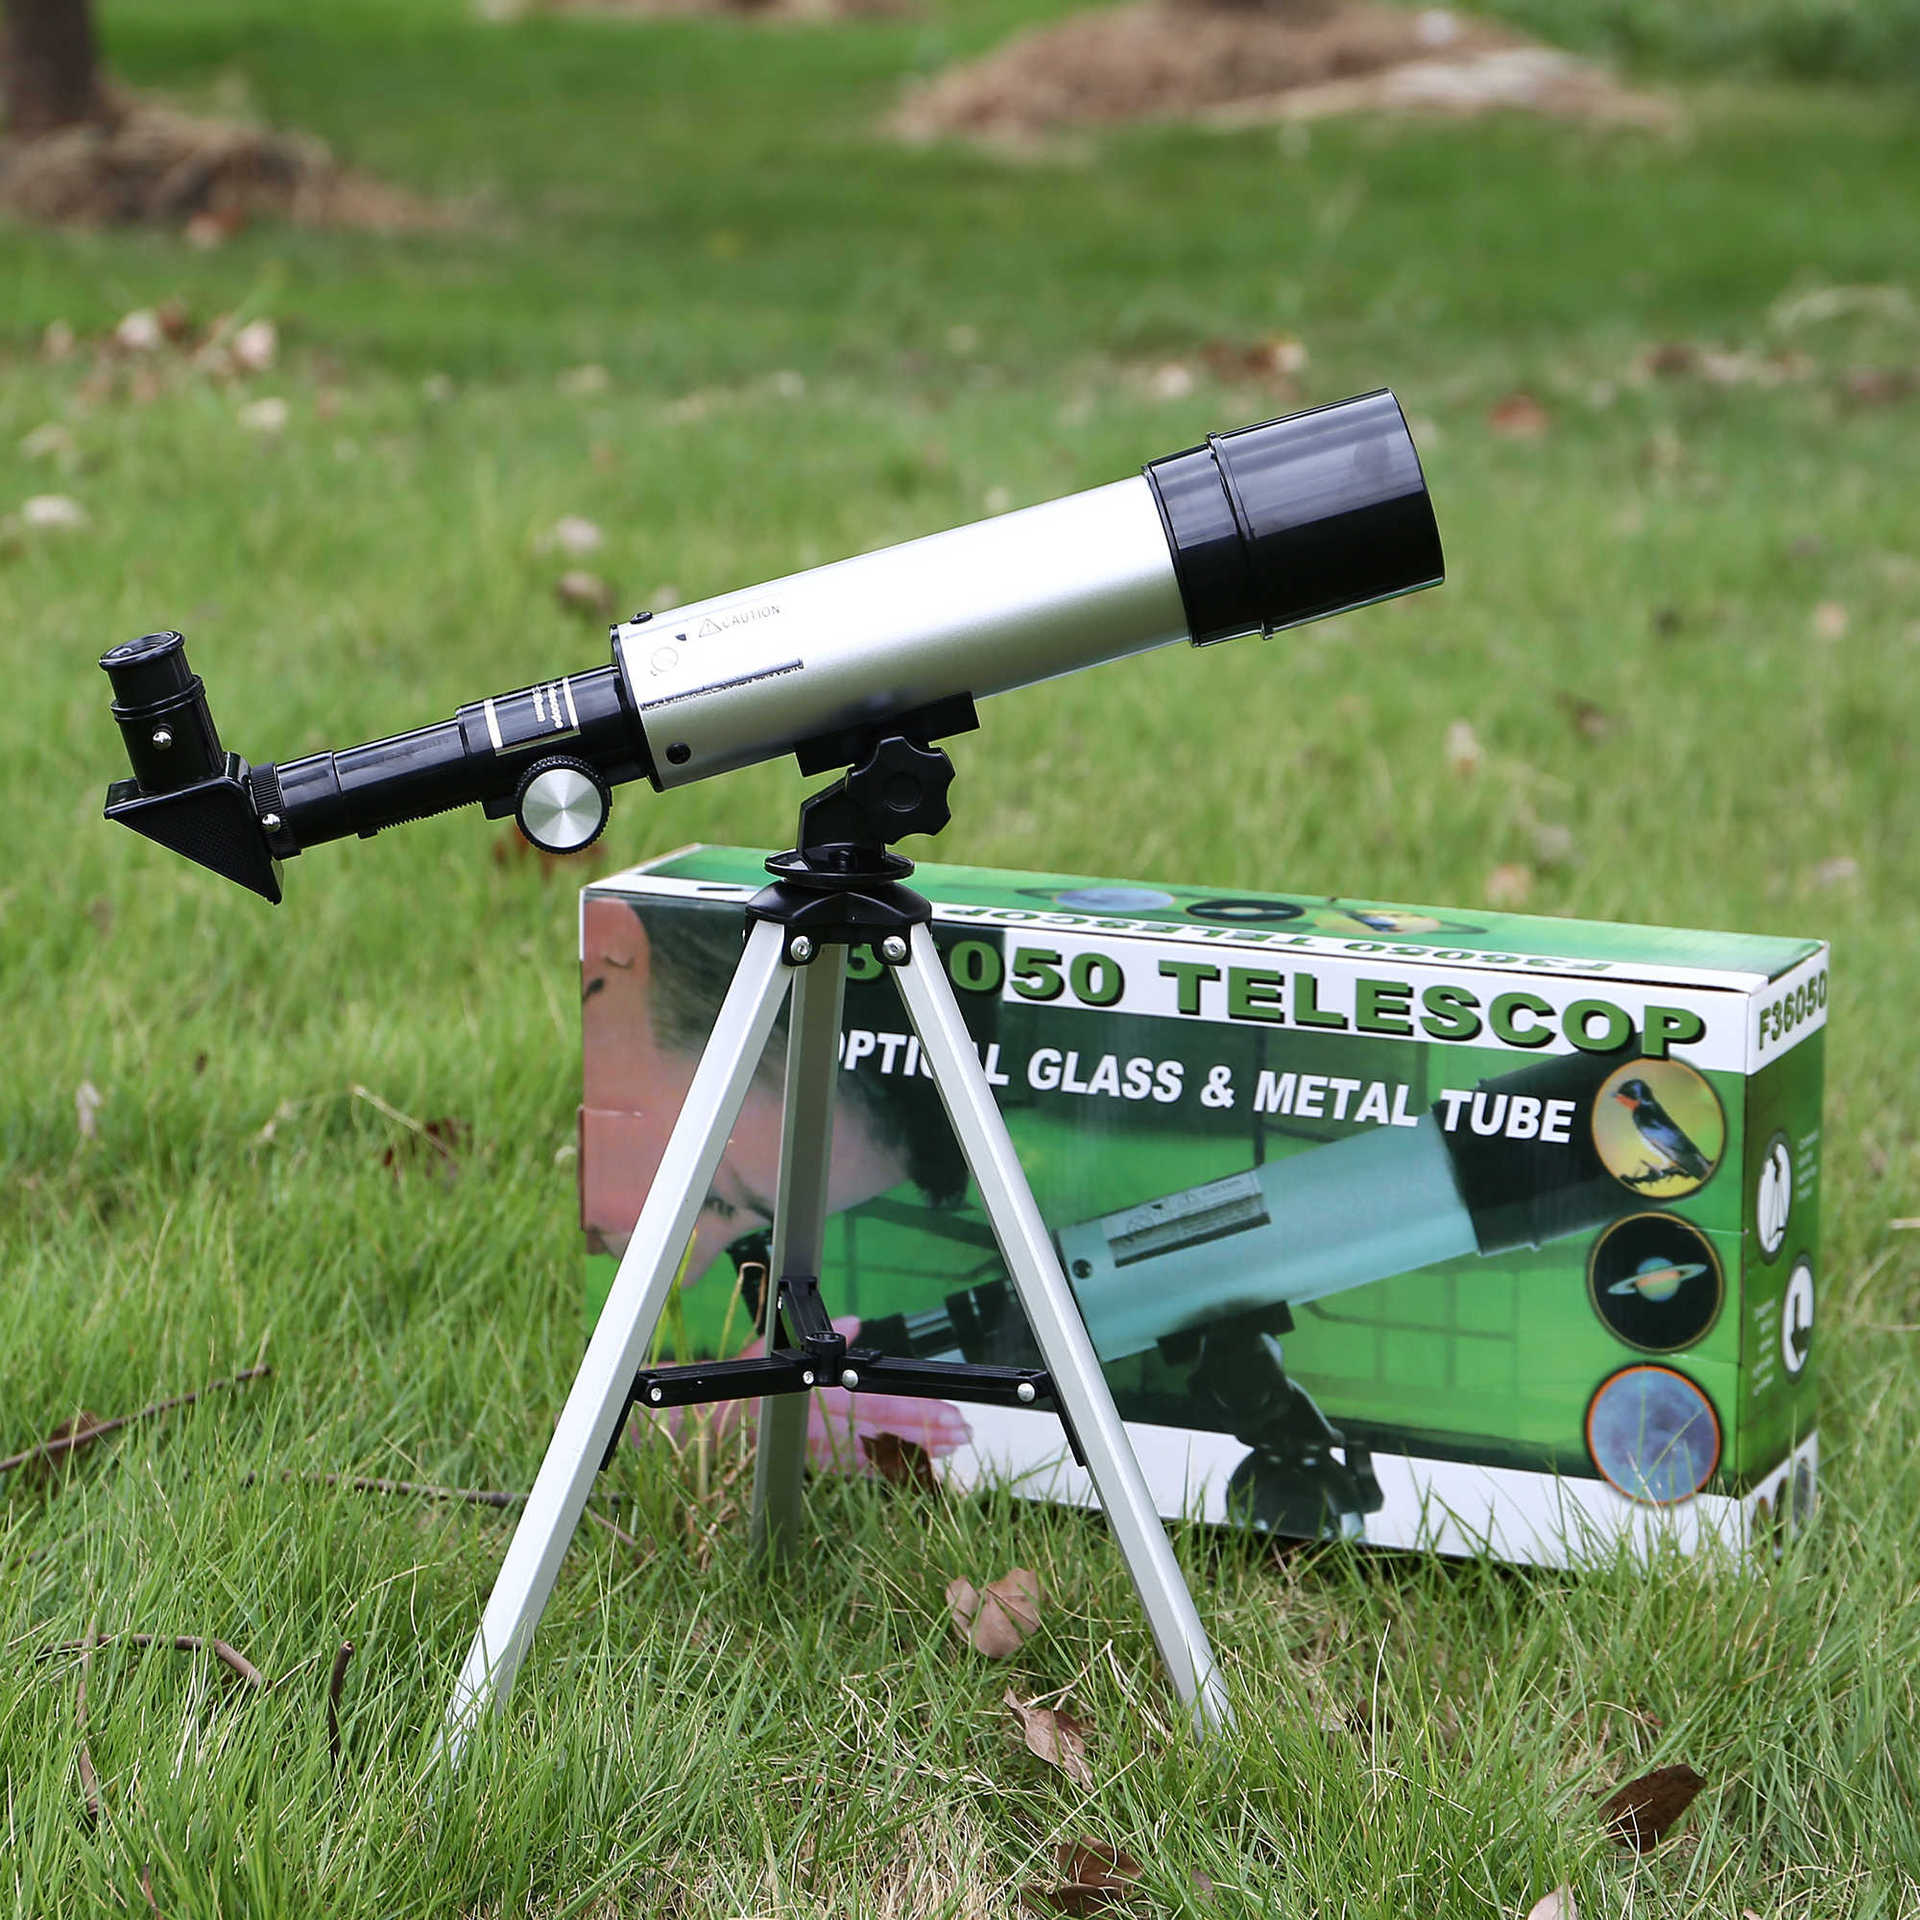 F36050入門天文望遠鏡-觀景鏡單筒望遠鏡 學生兒童禮品 聖誕節禮物